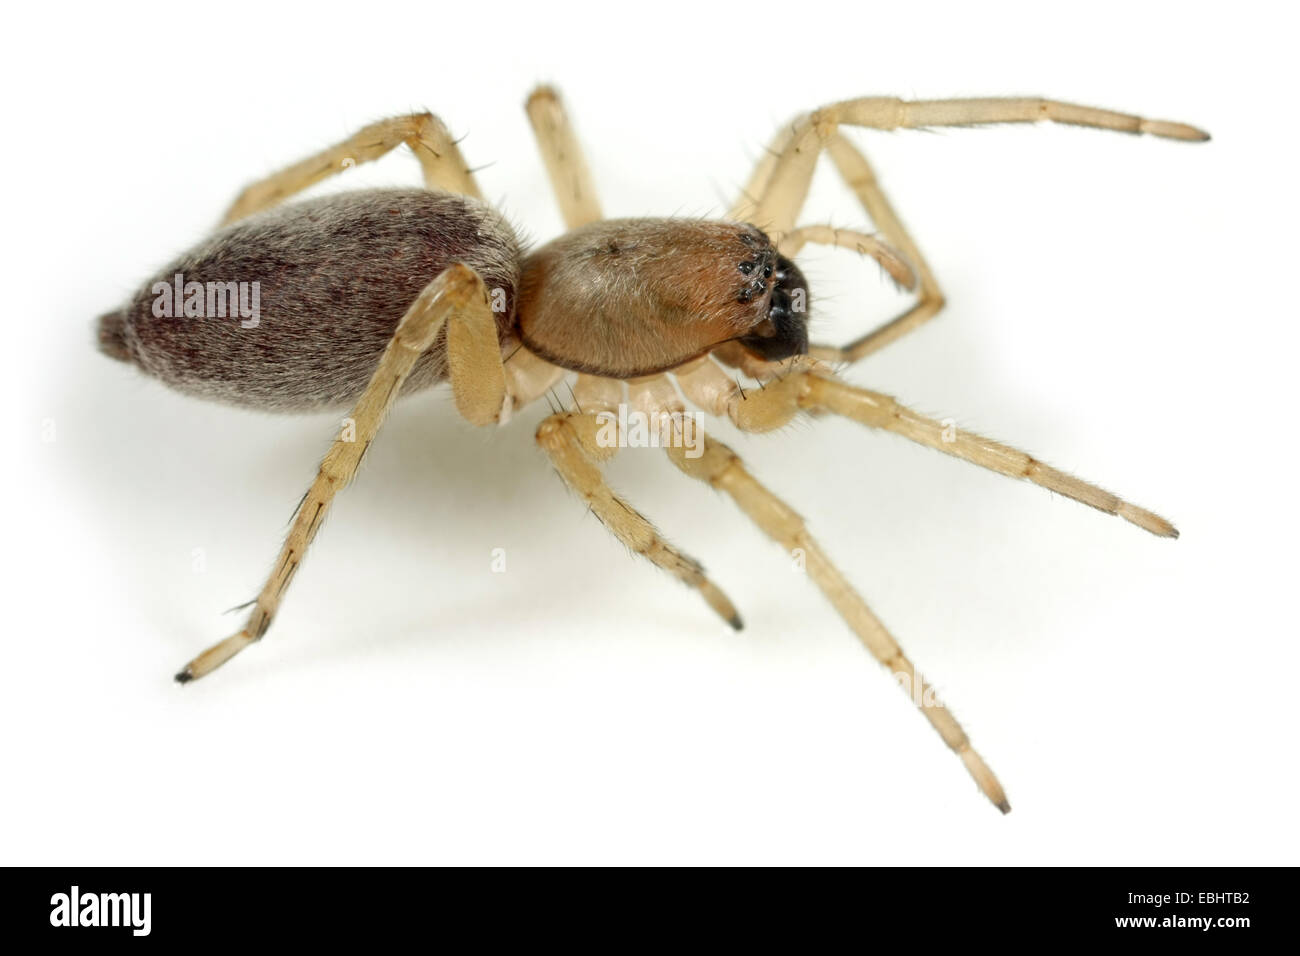 Une femme araignée araignée Clubiona reclusa (Sac) sur fond blanc. Les araignées Sac font partie de la famille Clubionidae. Banque D'Images